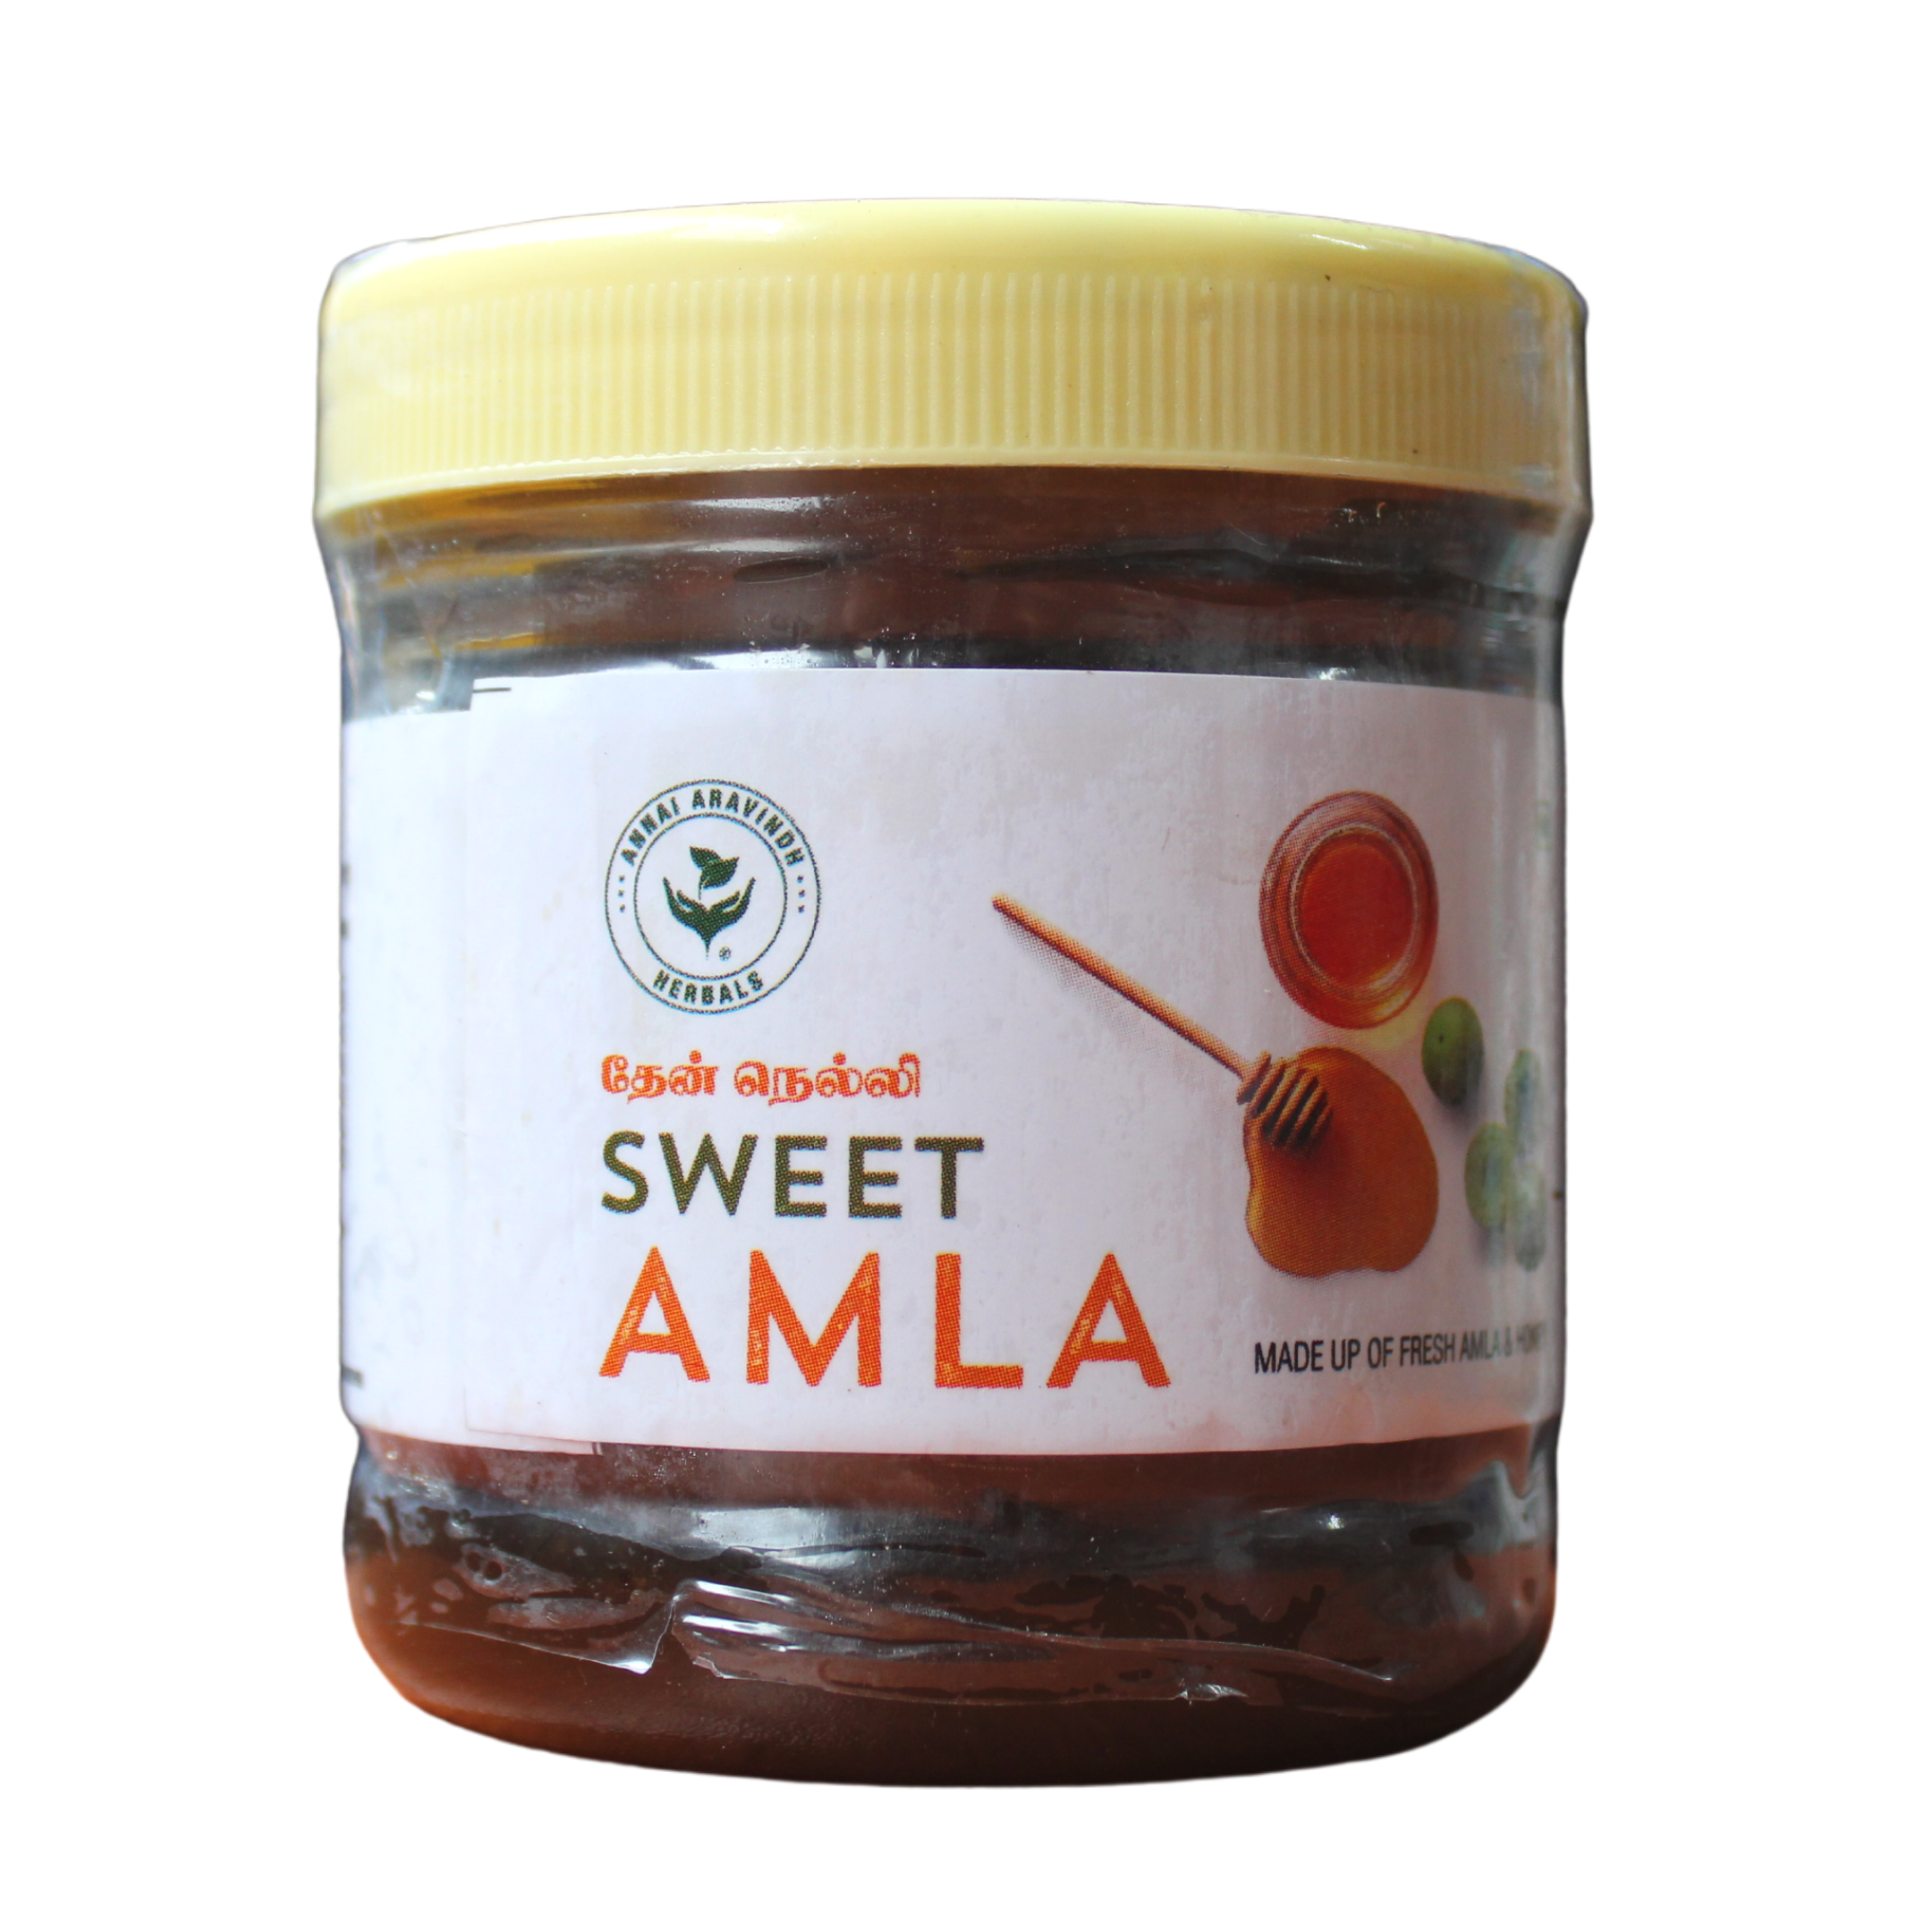 Shop Annai Aravindh Sweet Amla - 250gm at price 88.00 from Annai Aravindh Online - Ayush Care